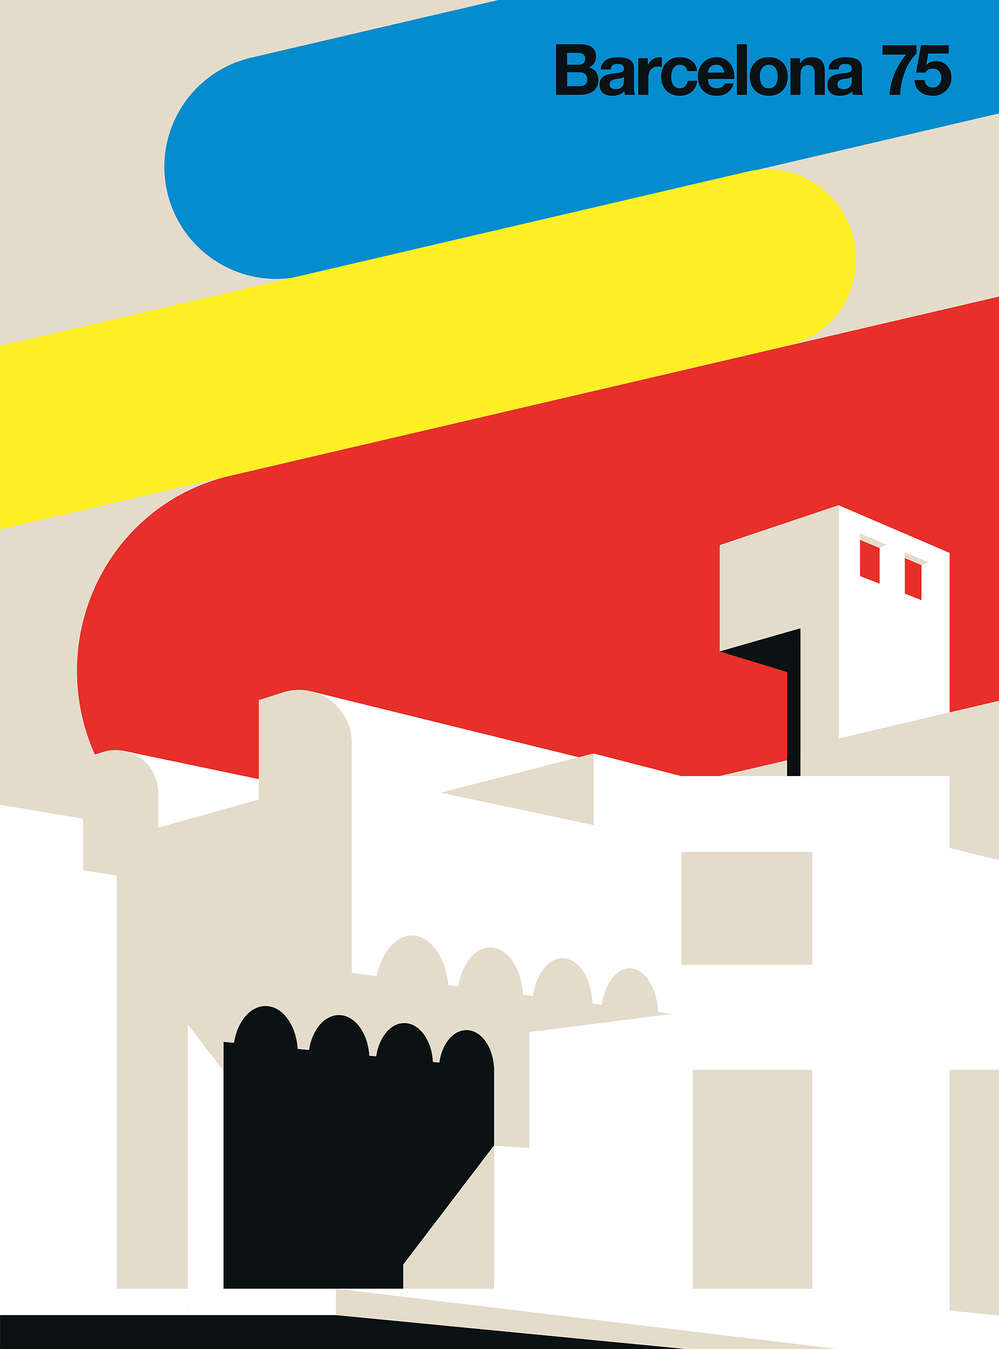             Papier peint Barcelona 75 dans un style rétro et coloré
        